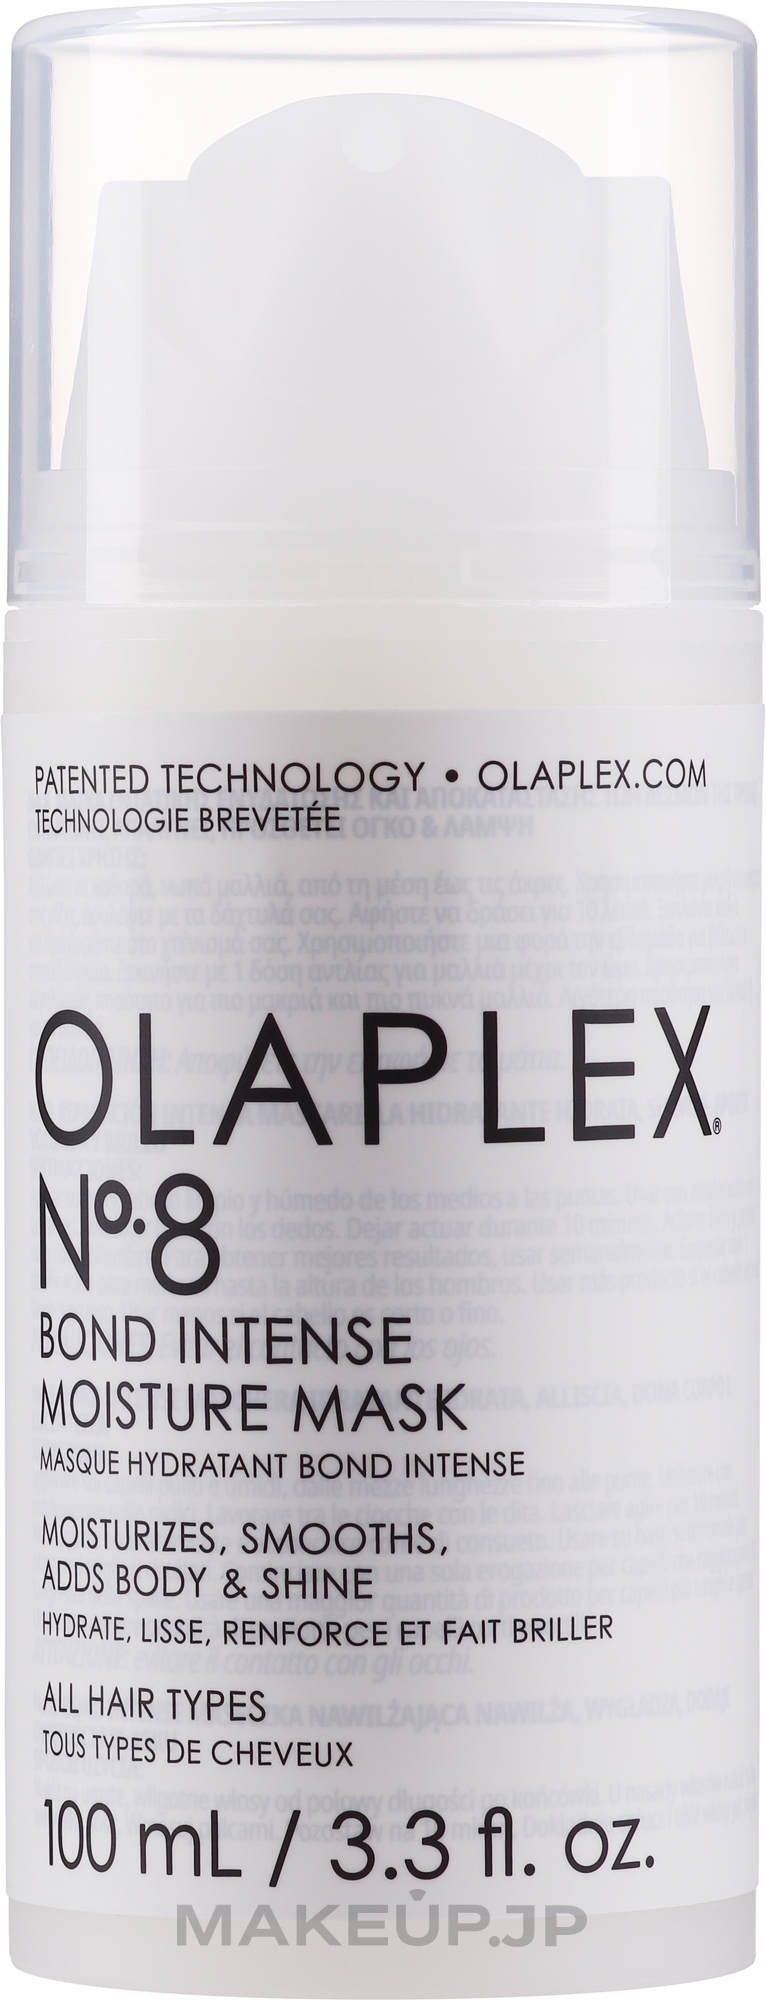 Restoration Of Hair Structure Blond Intense Moisture Mask - Olaplex №8 Blond Intense Moisture Mask — photo 100 ml